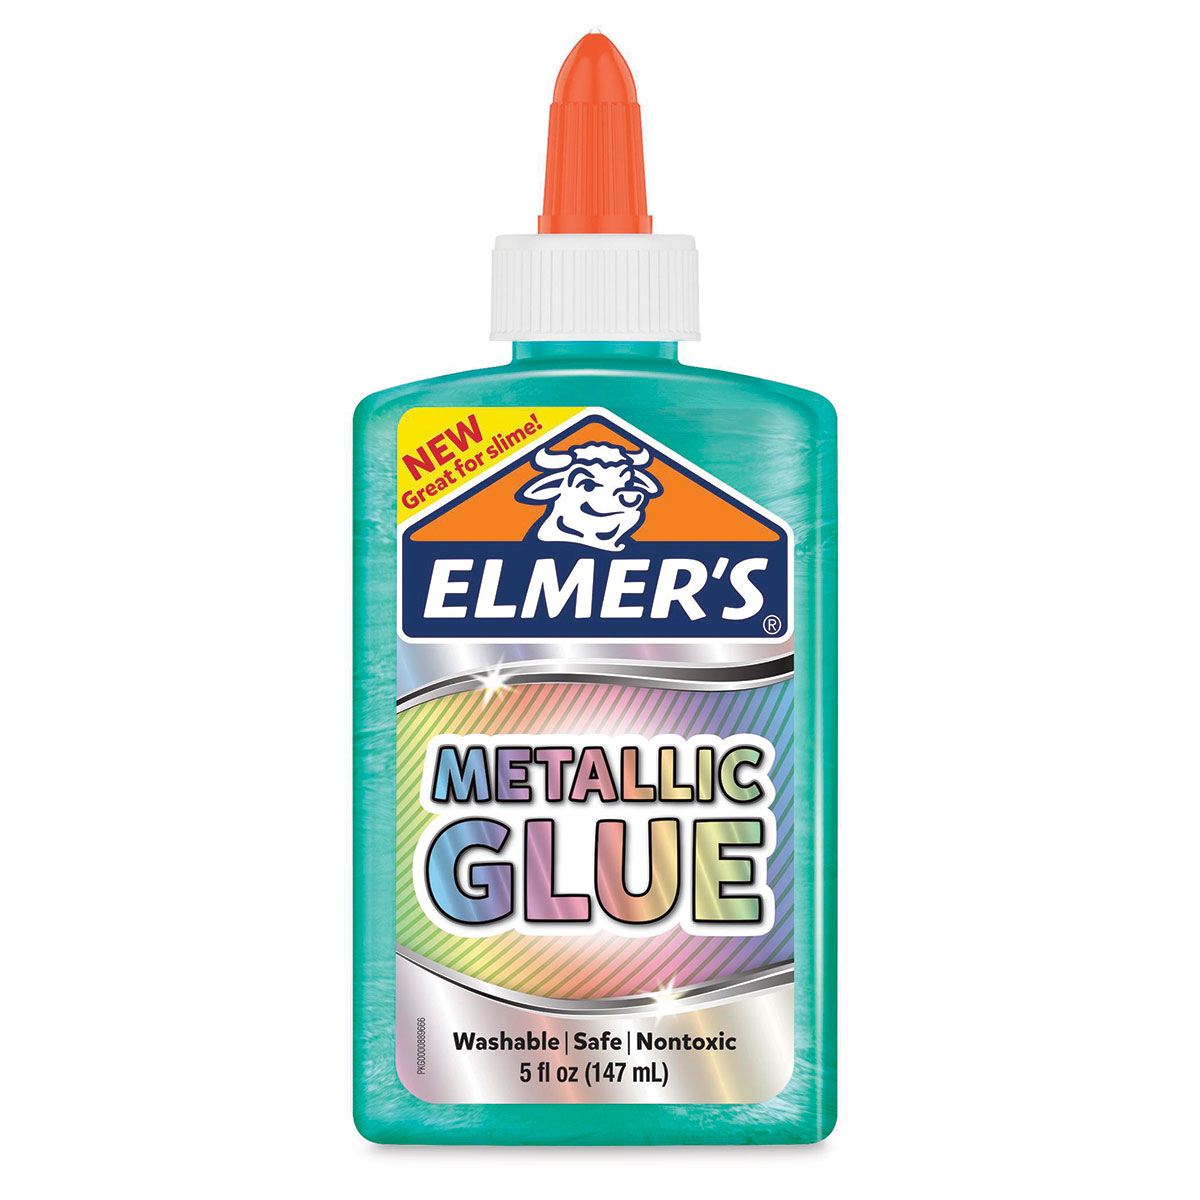 Elmer's Super Glue  Utrecht Art Supplies